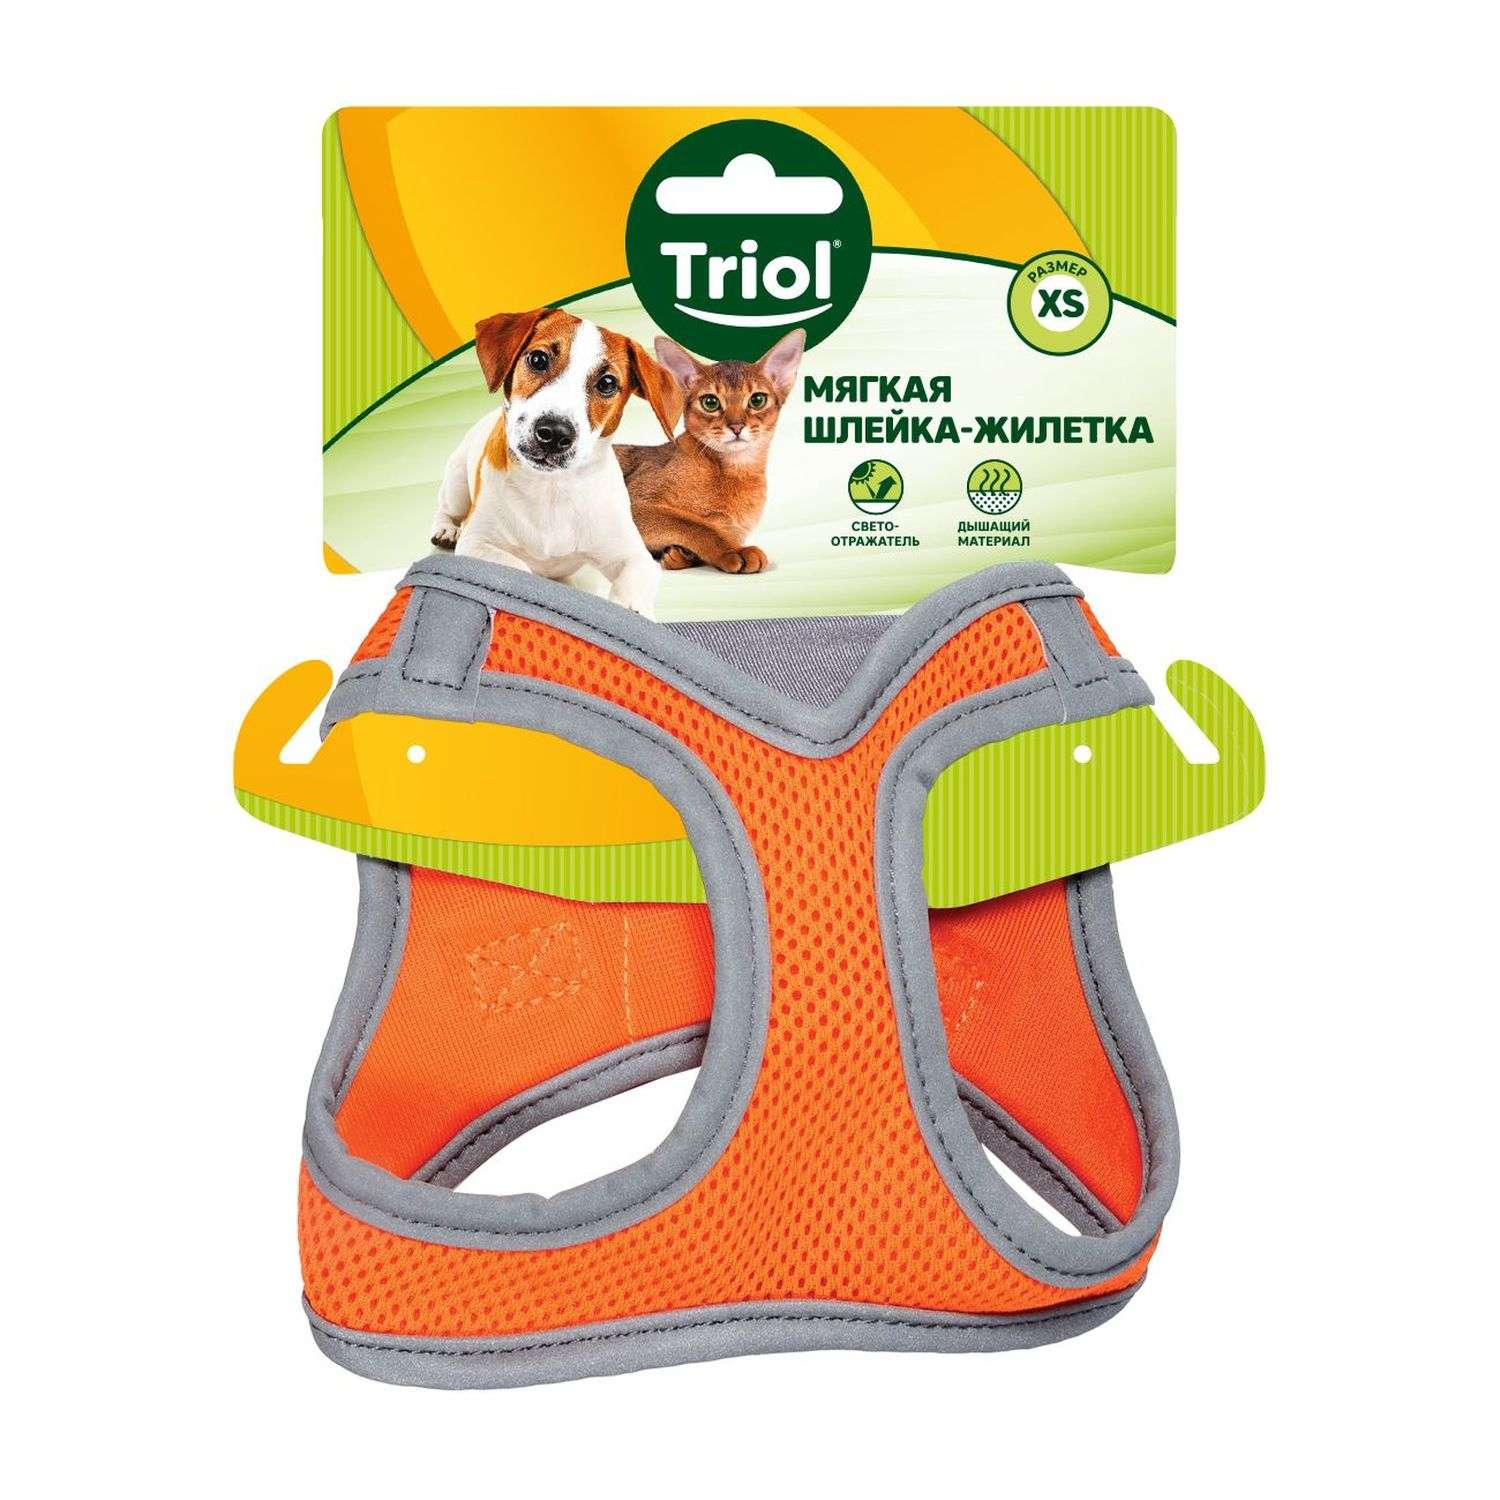 Шлейка-жилетка для собак Triol мягкая XS Оранжевый - фото 2